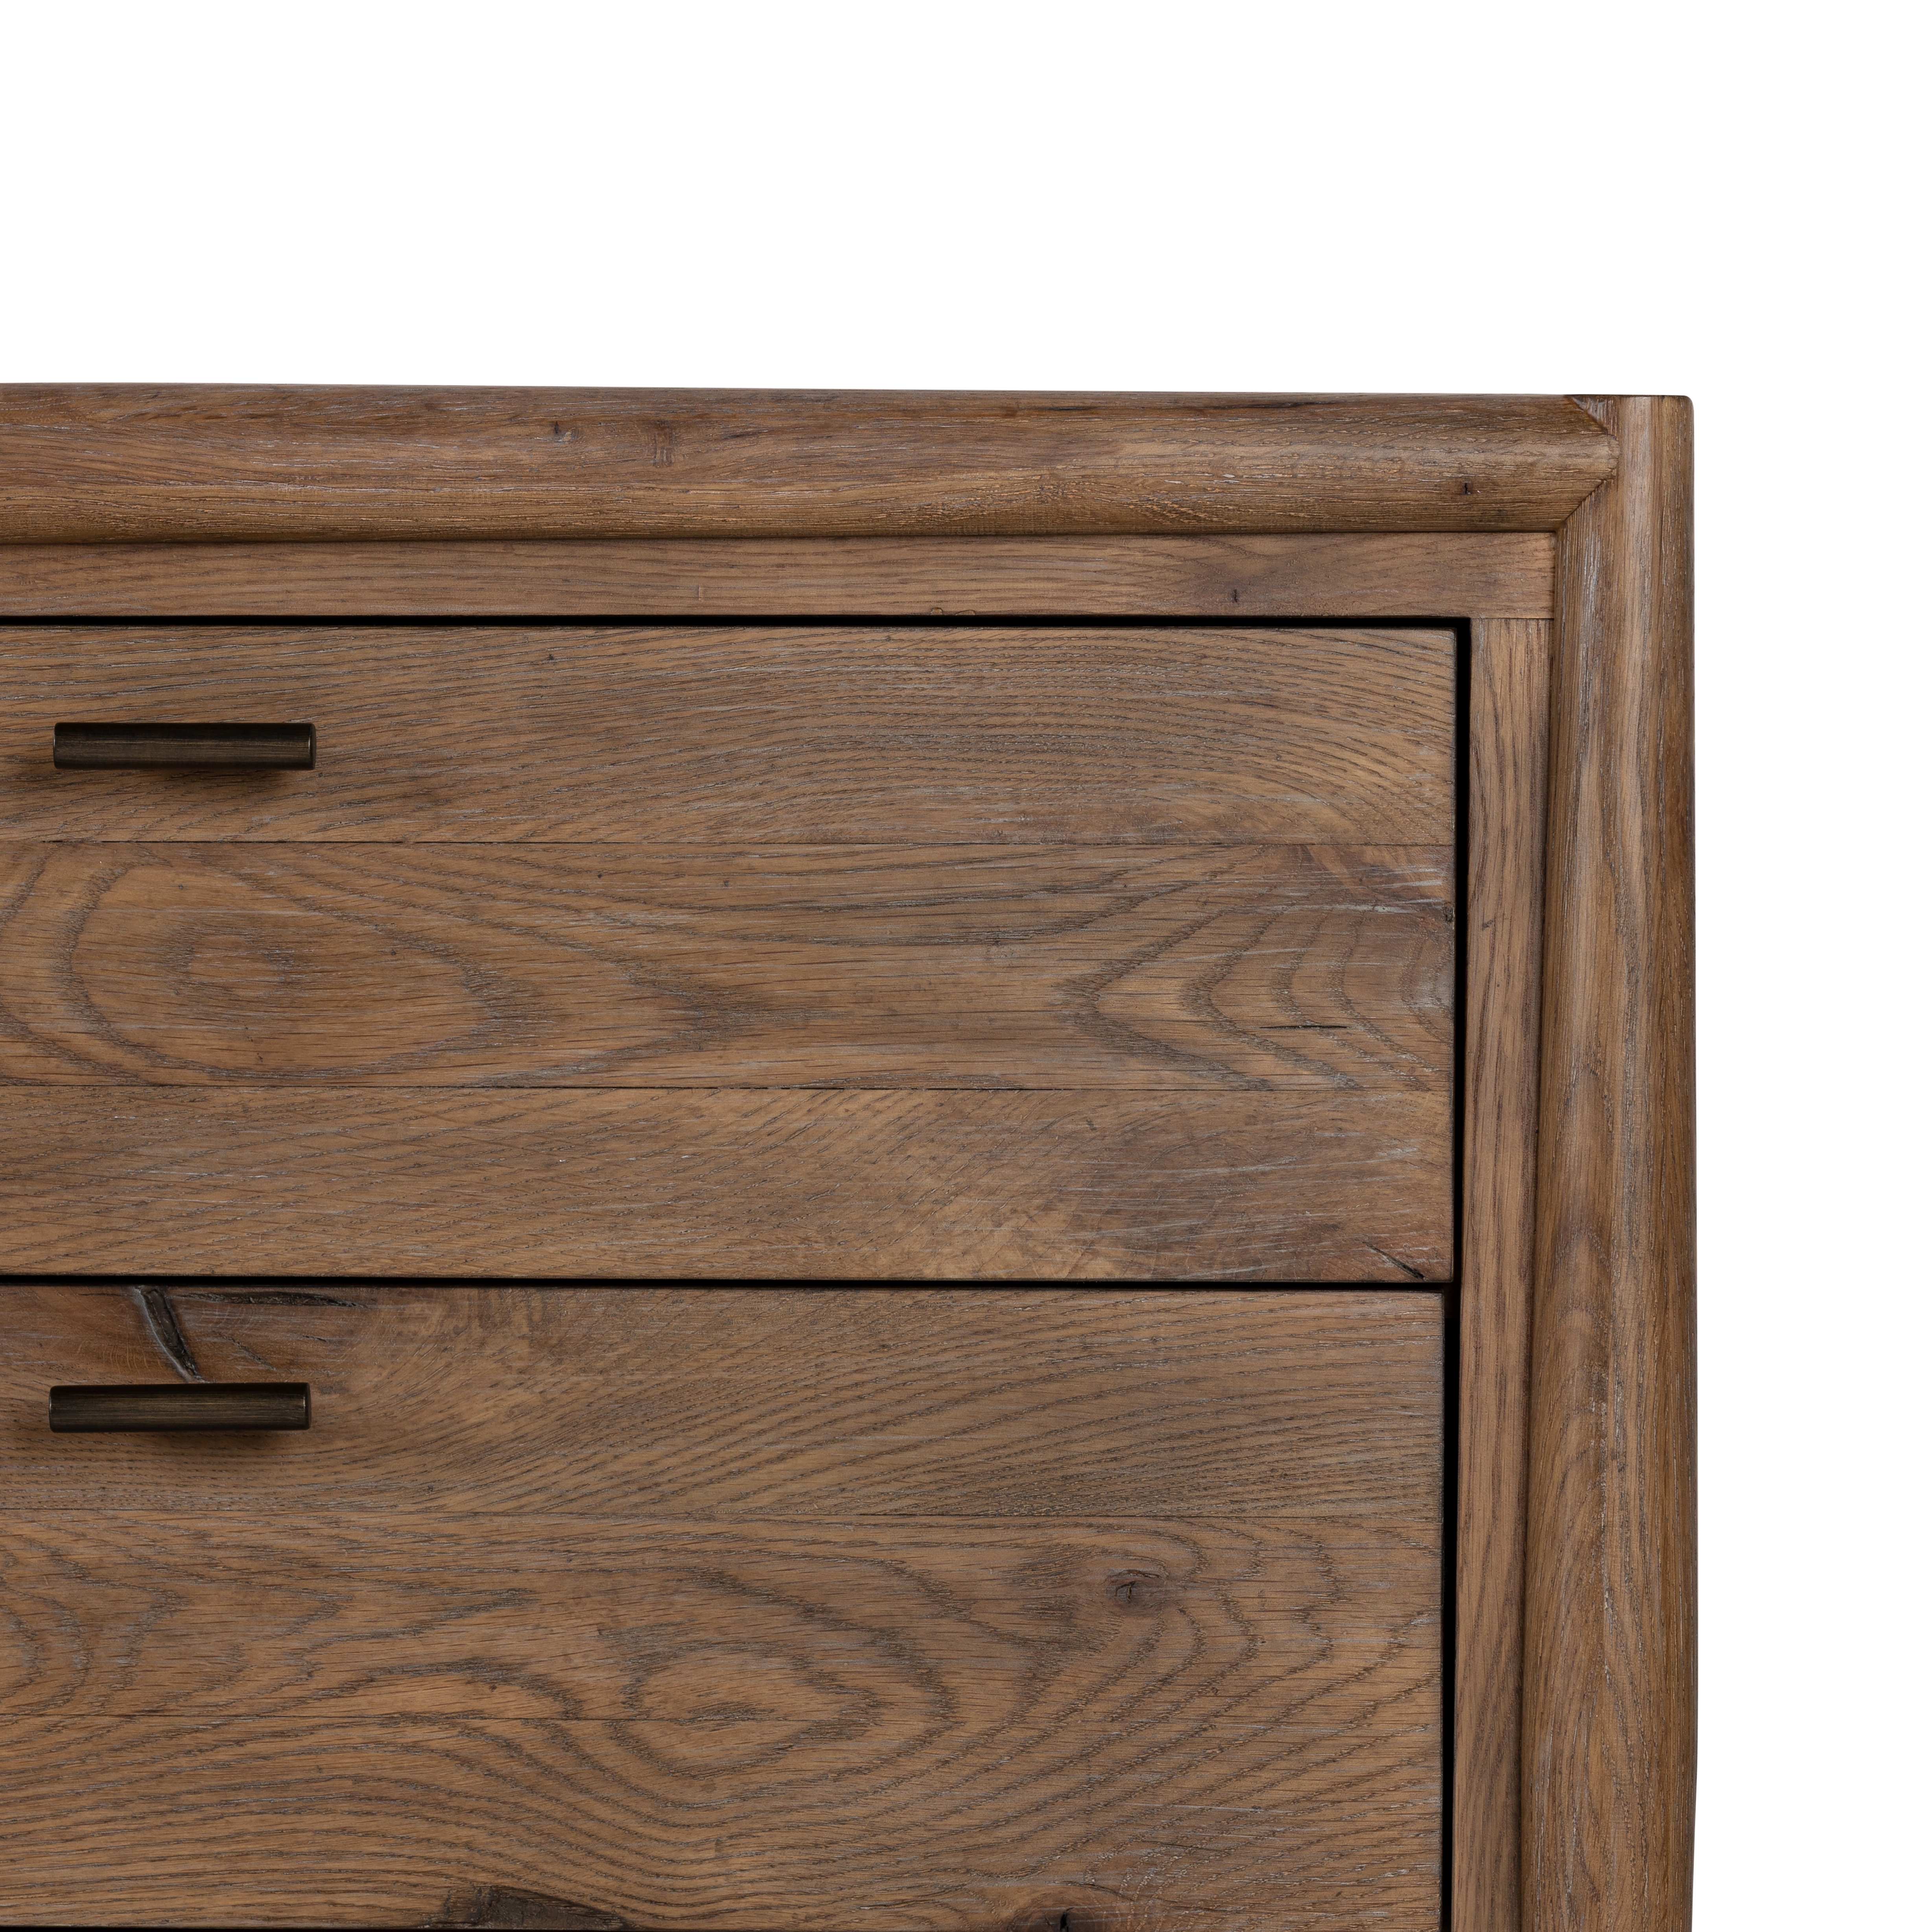 Glenview 6 Drawer Dresser-Weathered Oak - Image 2